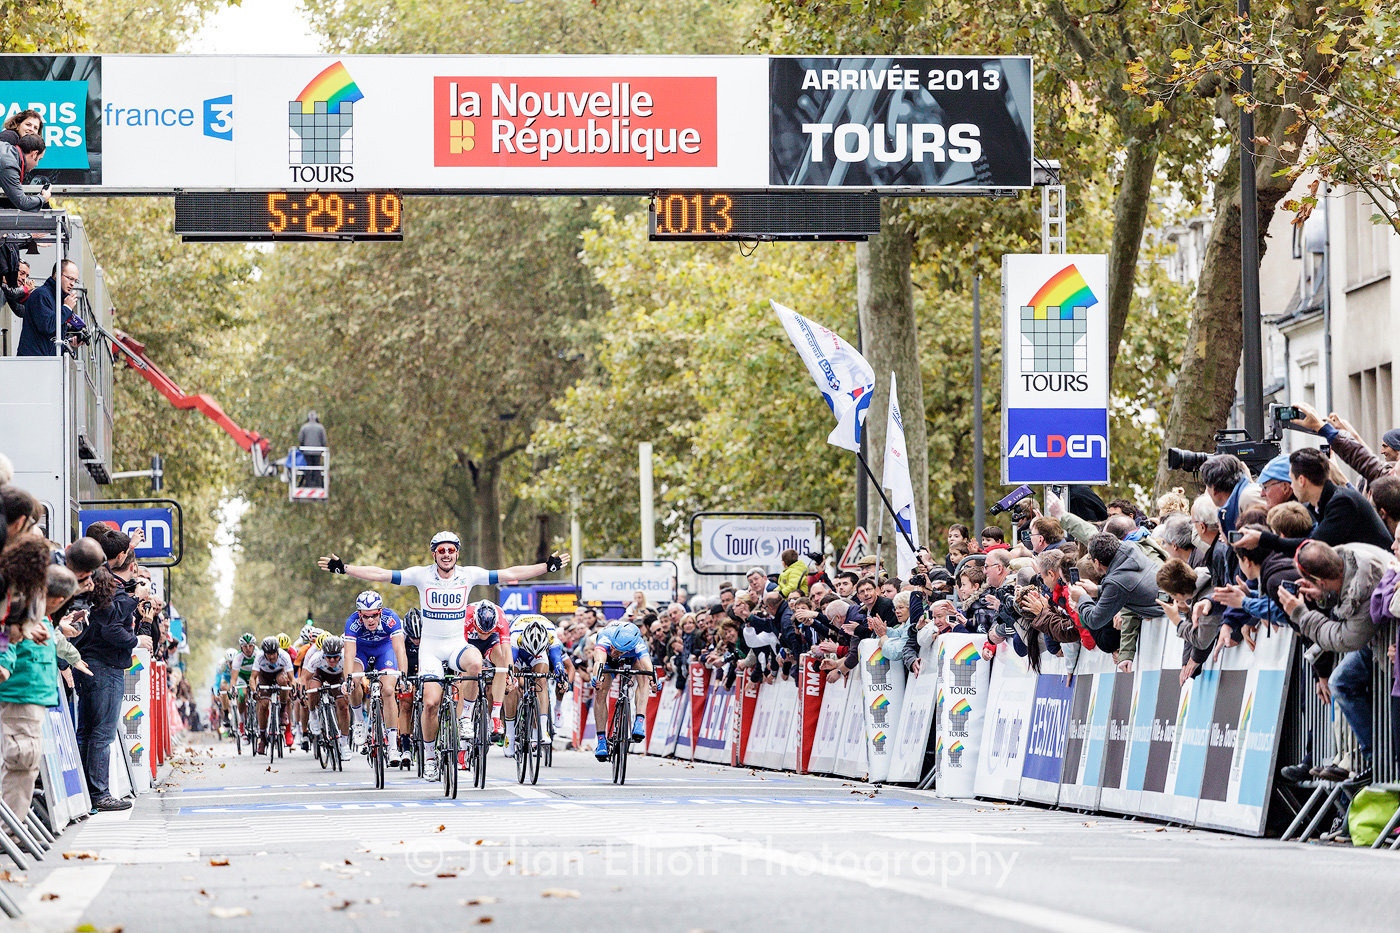 The Paris Tours 2013 cycle race